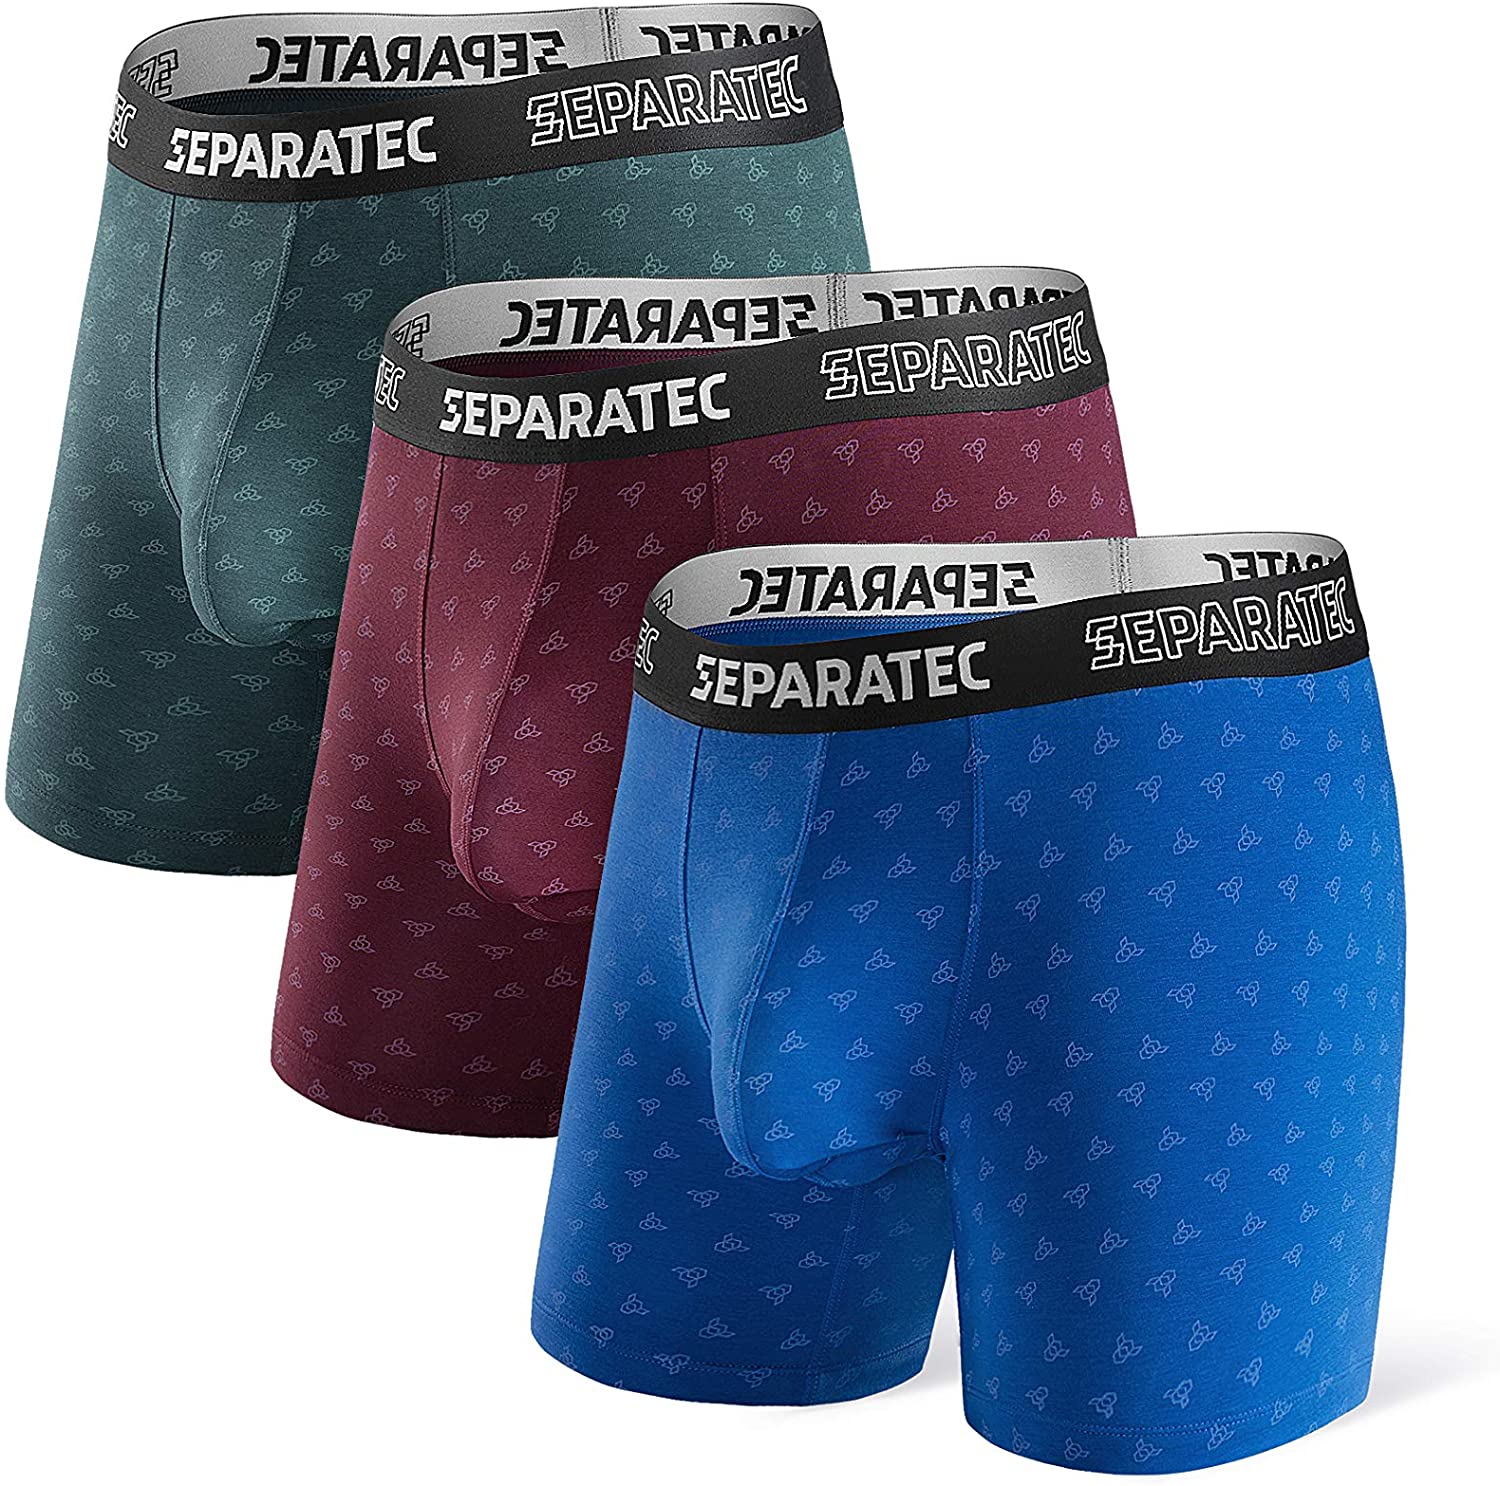 Separatec Men's Dual Pouch Underwear Comfort Soft Premium Cotton